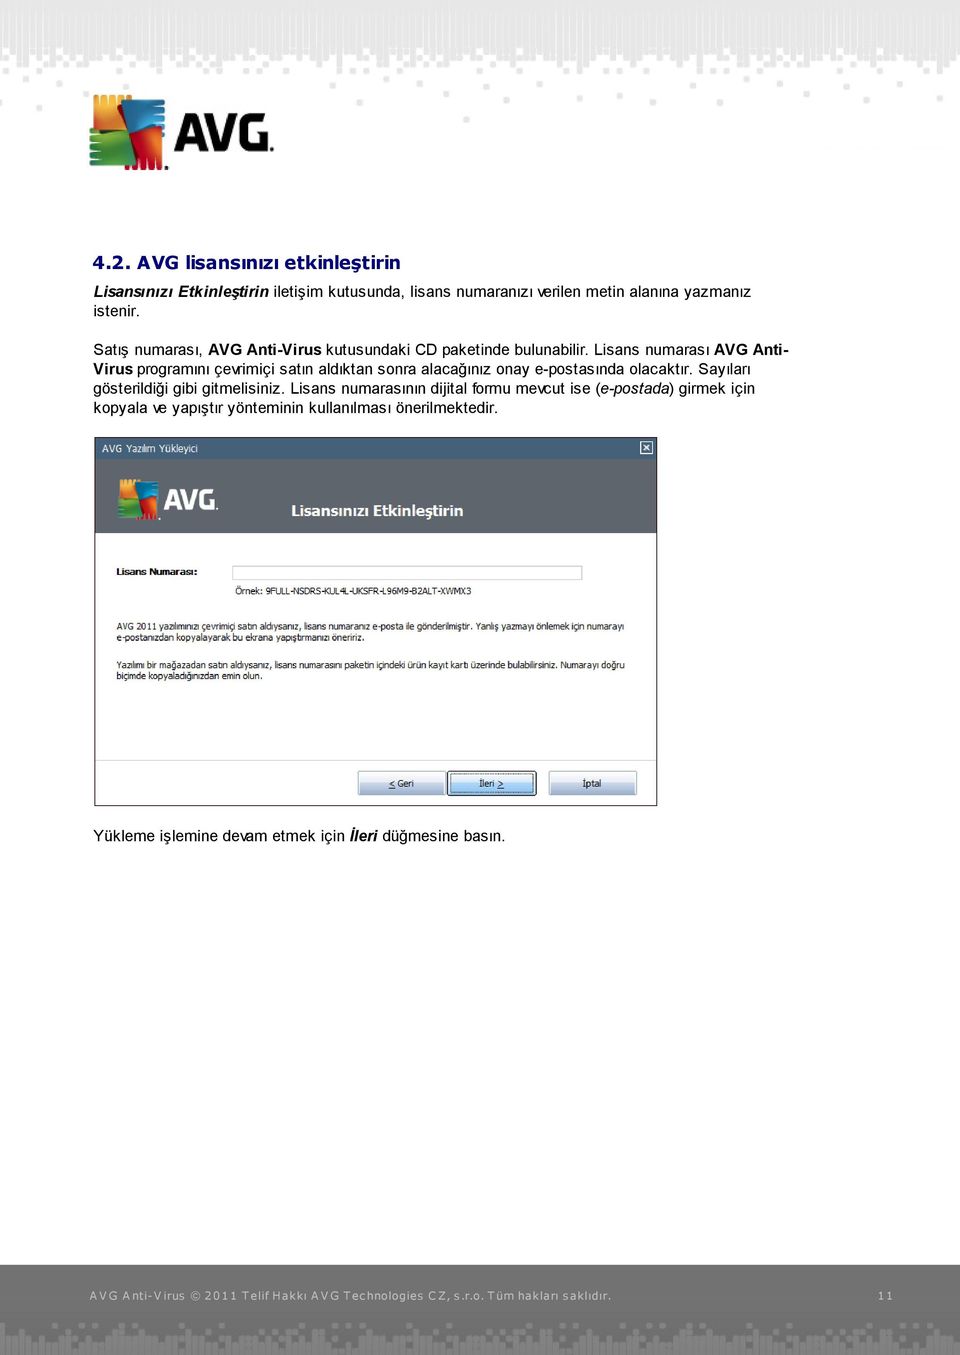 Lisans numarası AVG AntiVirus programını çevrimiçi satın aldıktan sonra alacağınız onay e-postasında olacaktır.